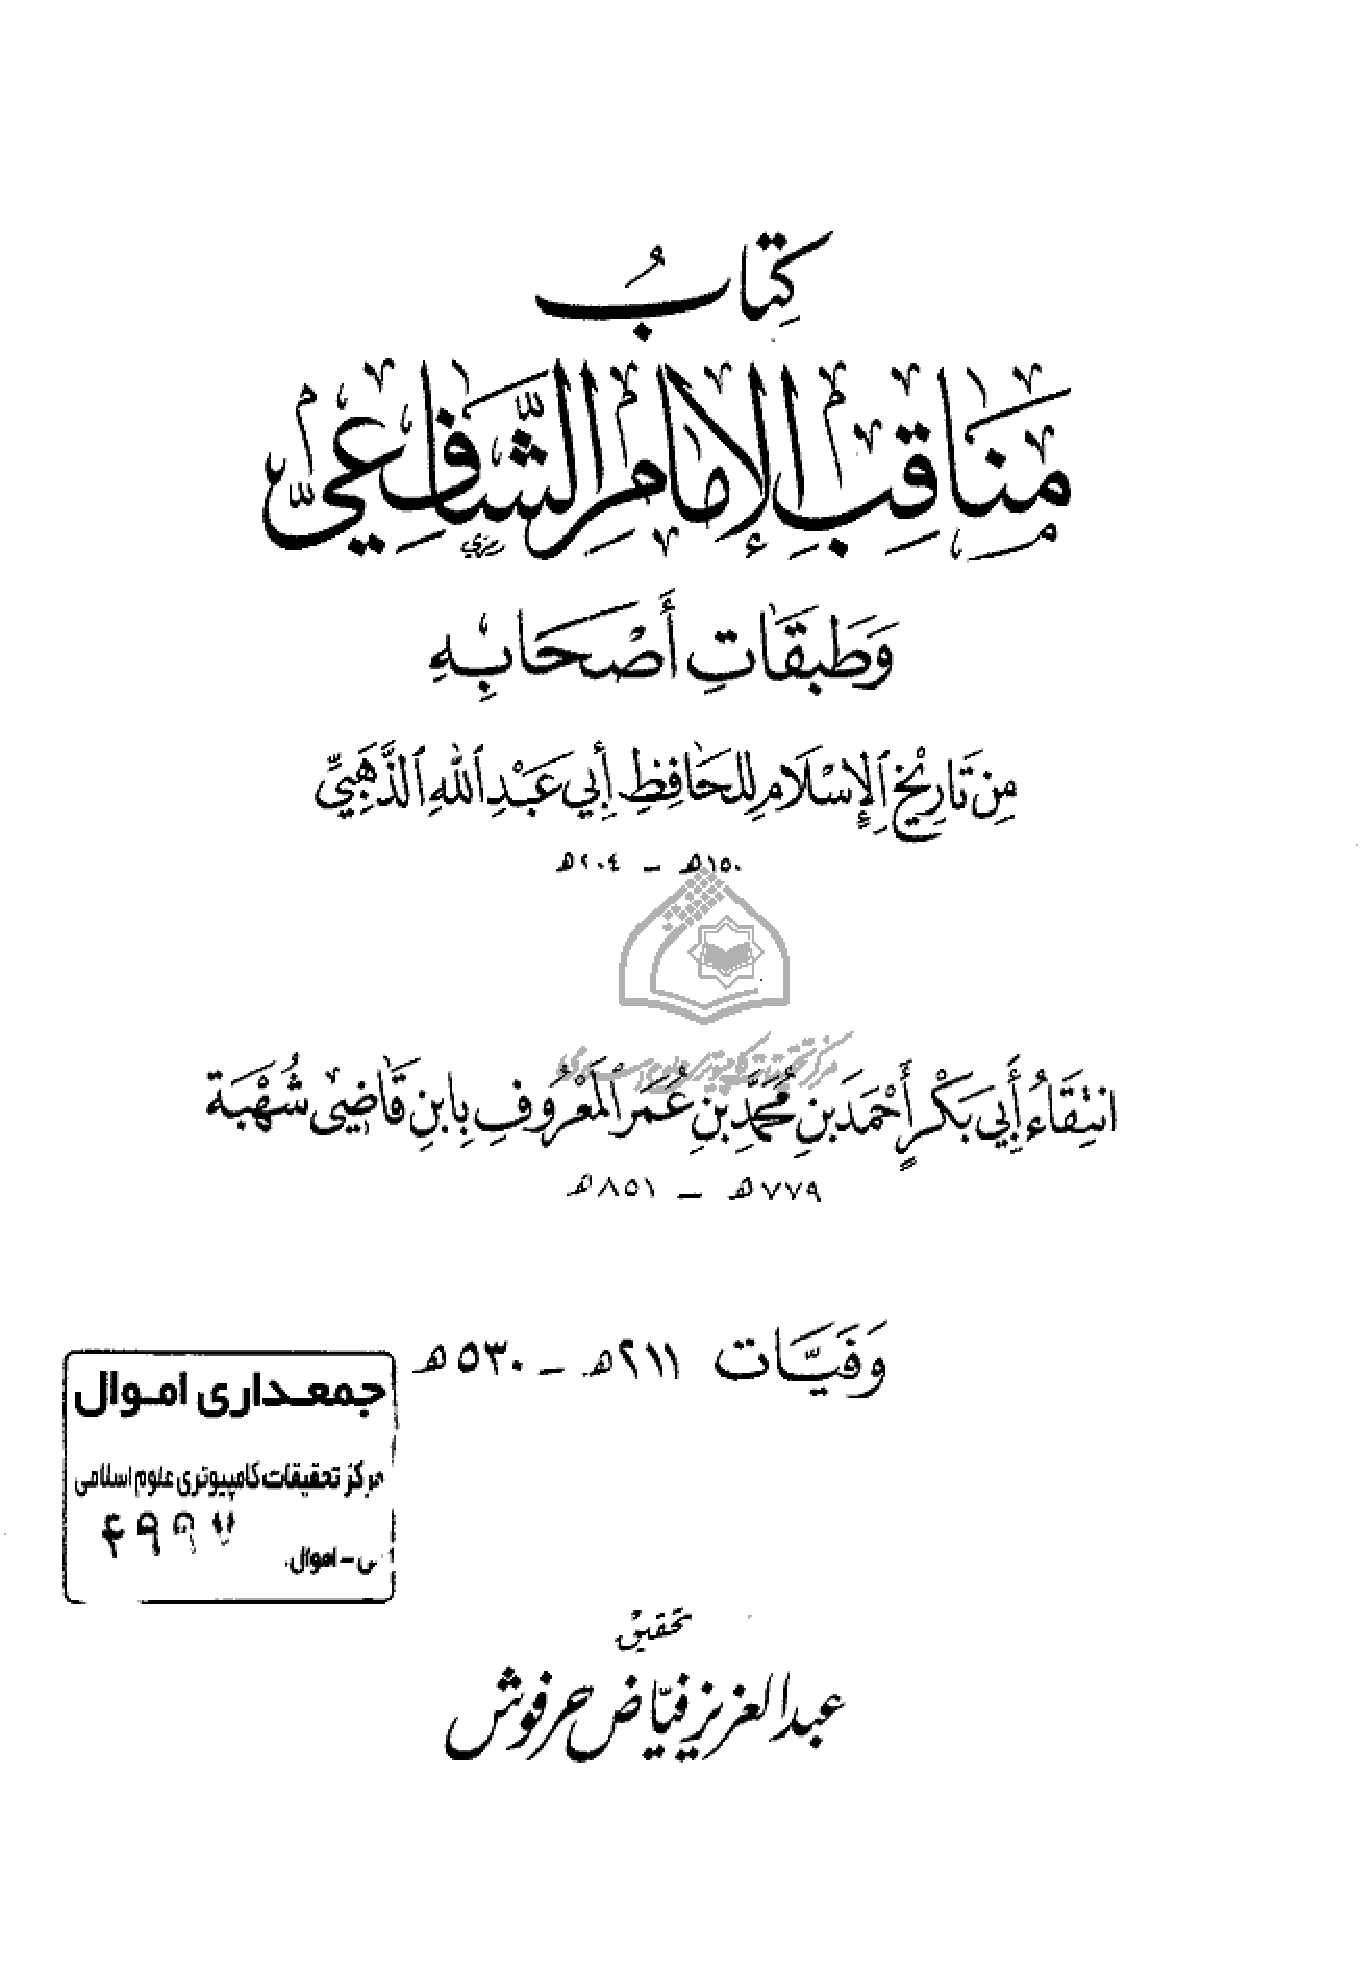 مناقب الإمام الشافعي وطبقات أصحابه من تاريخ الإسلام للحافظ أبي عبد الله الذهبي